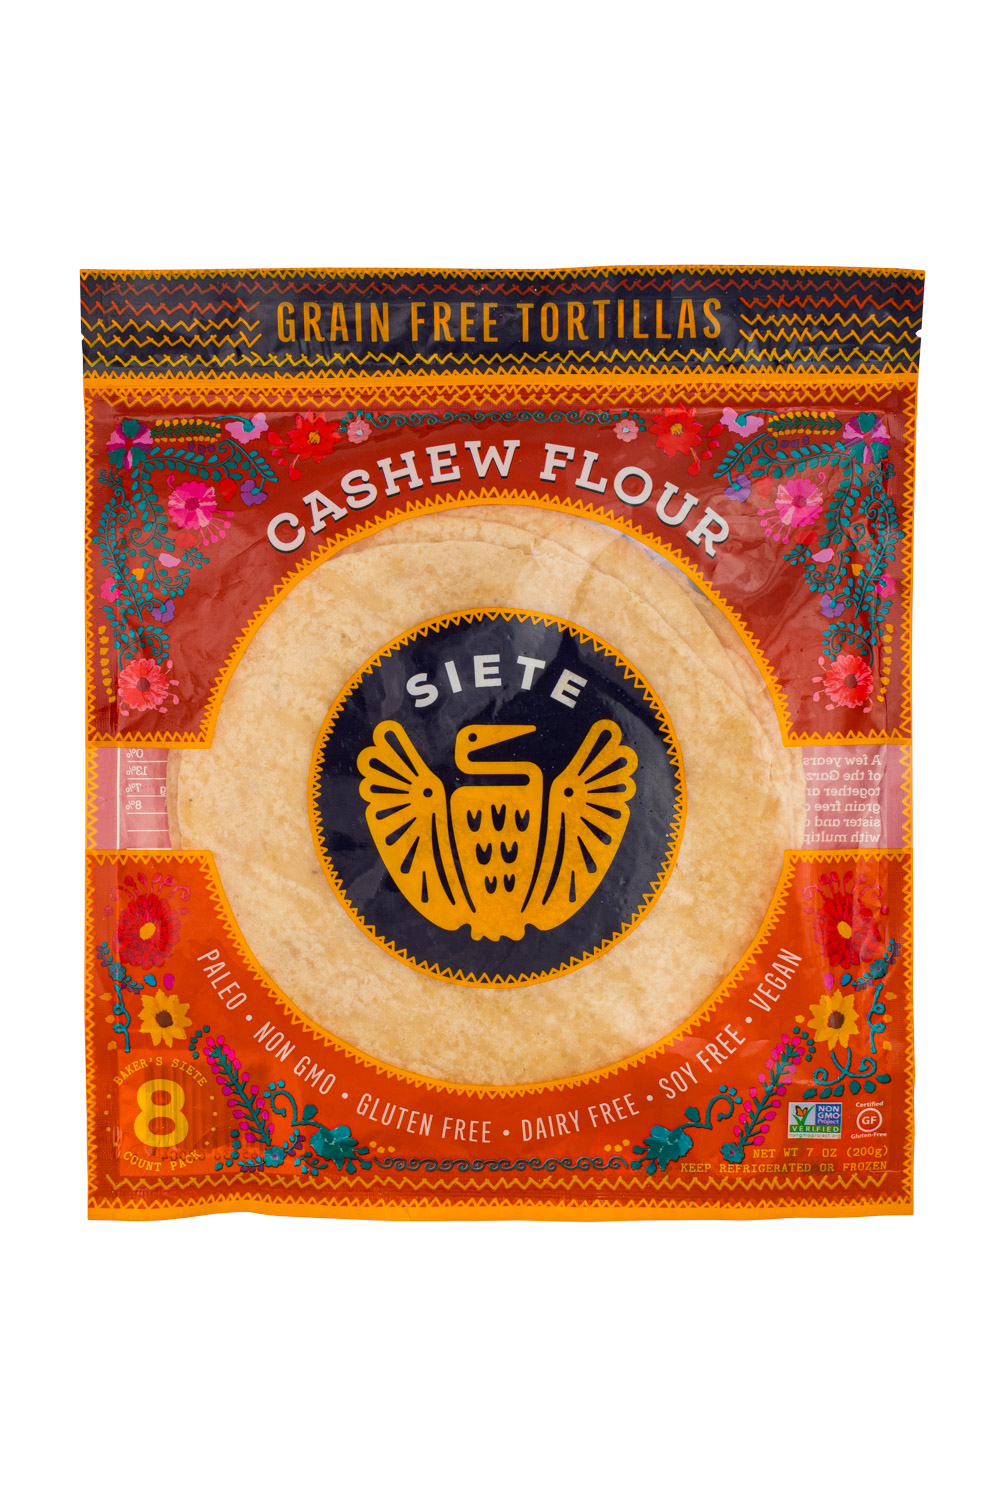 GF Tortillas - Cashew Flour